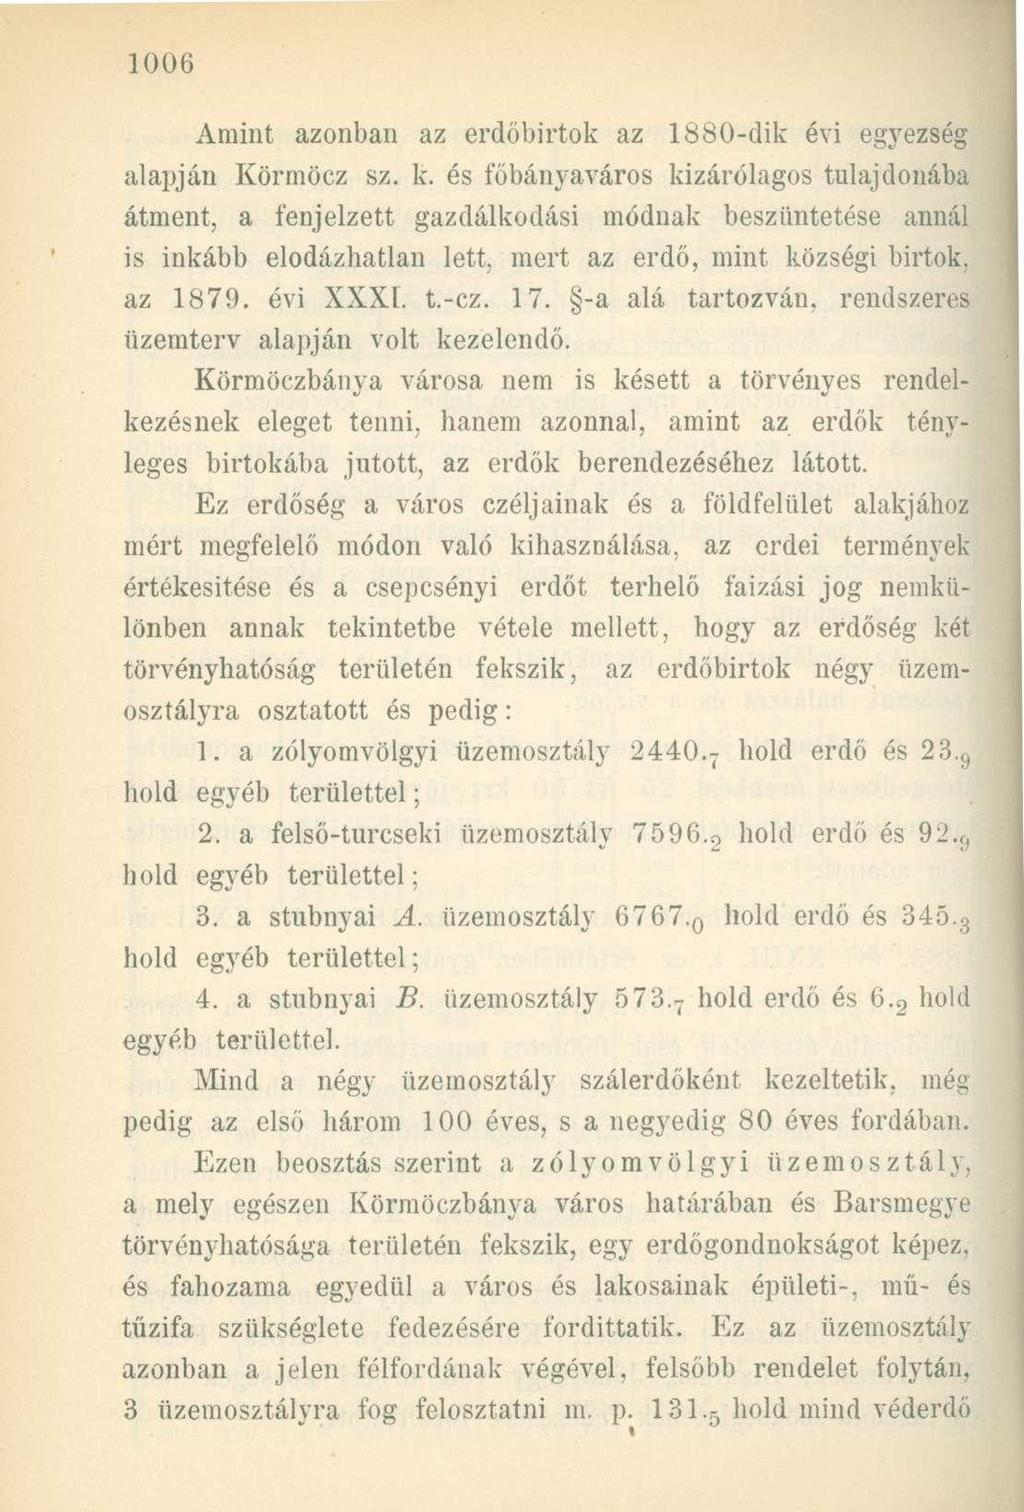 Amint azonban az erdőbirtok az 1880-dik évi egyezség alapján Körmöcz sz. k.